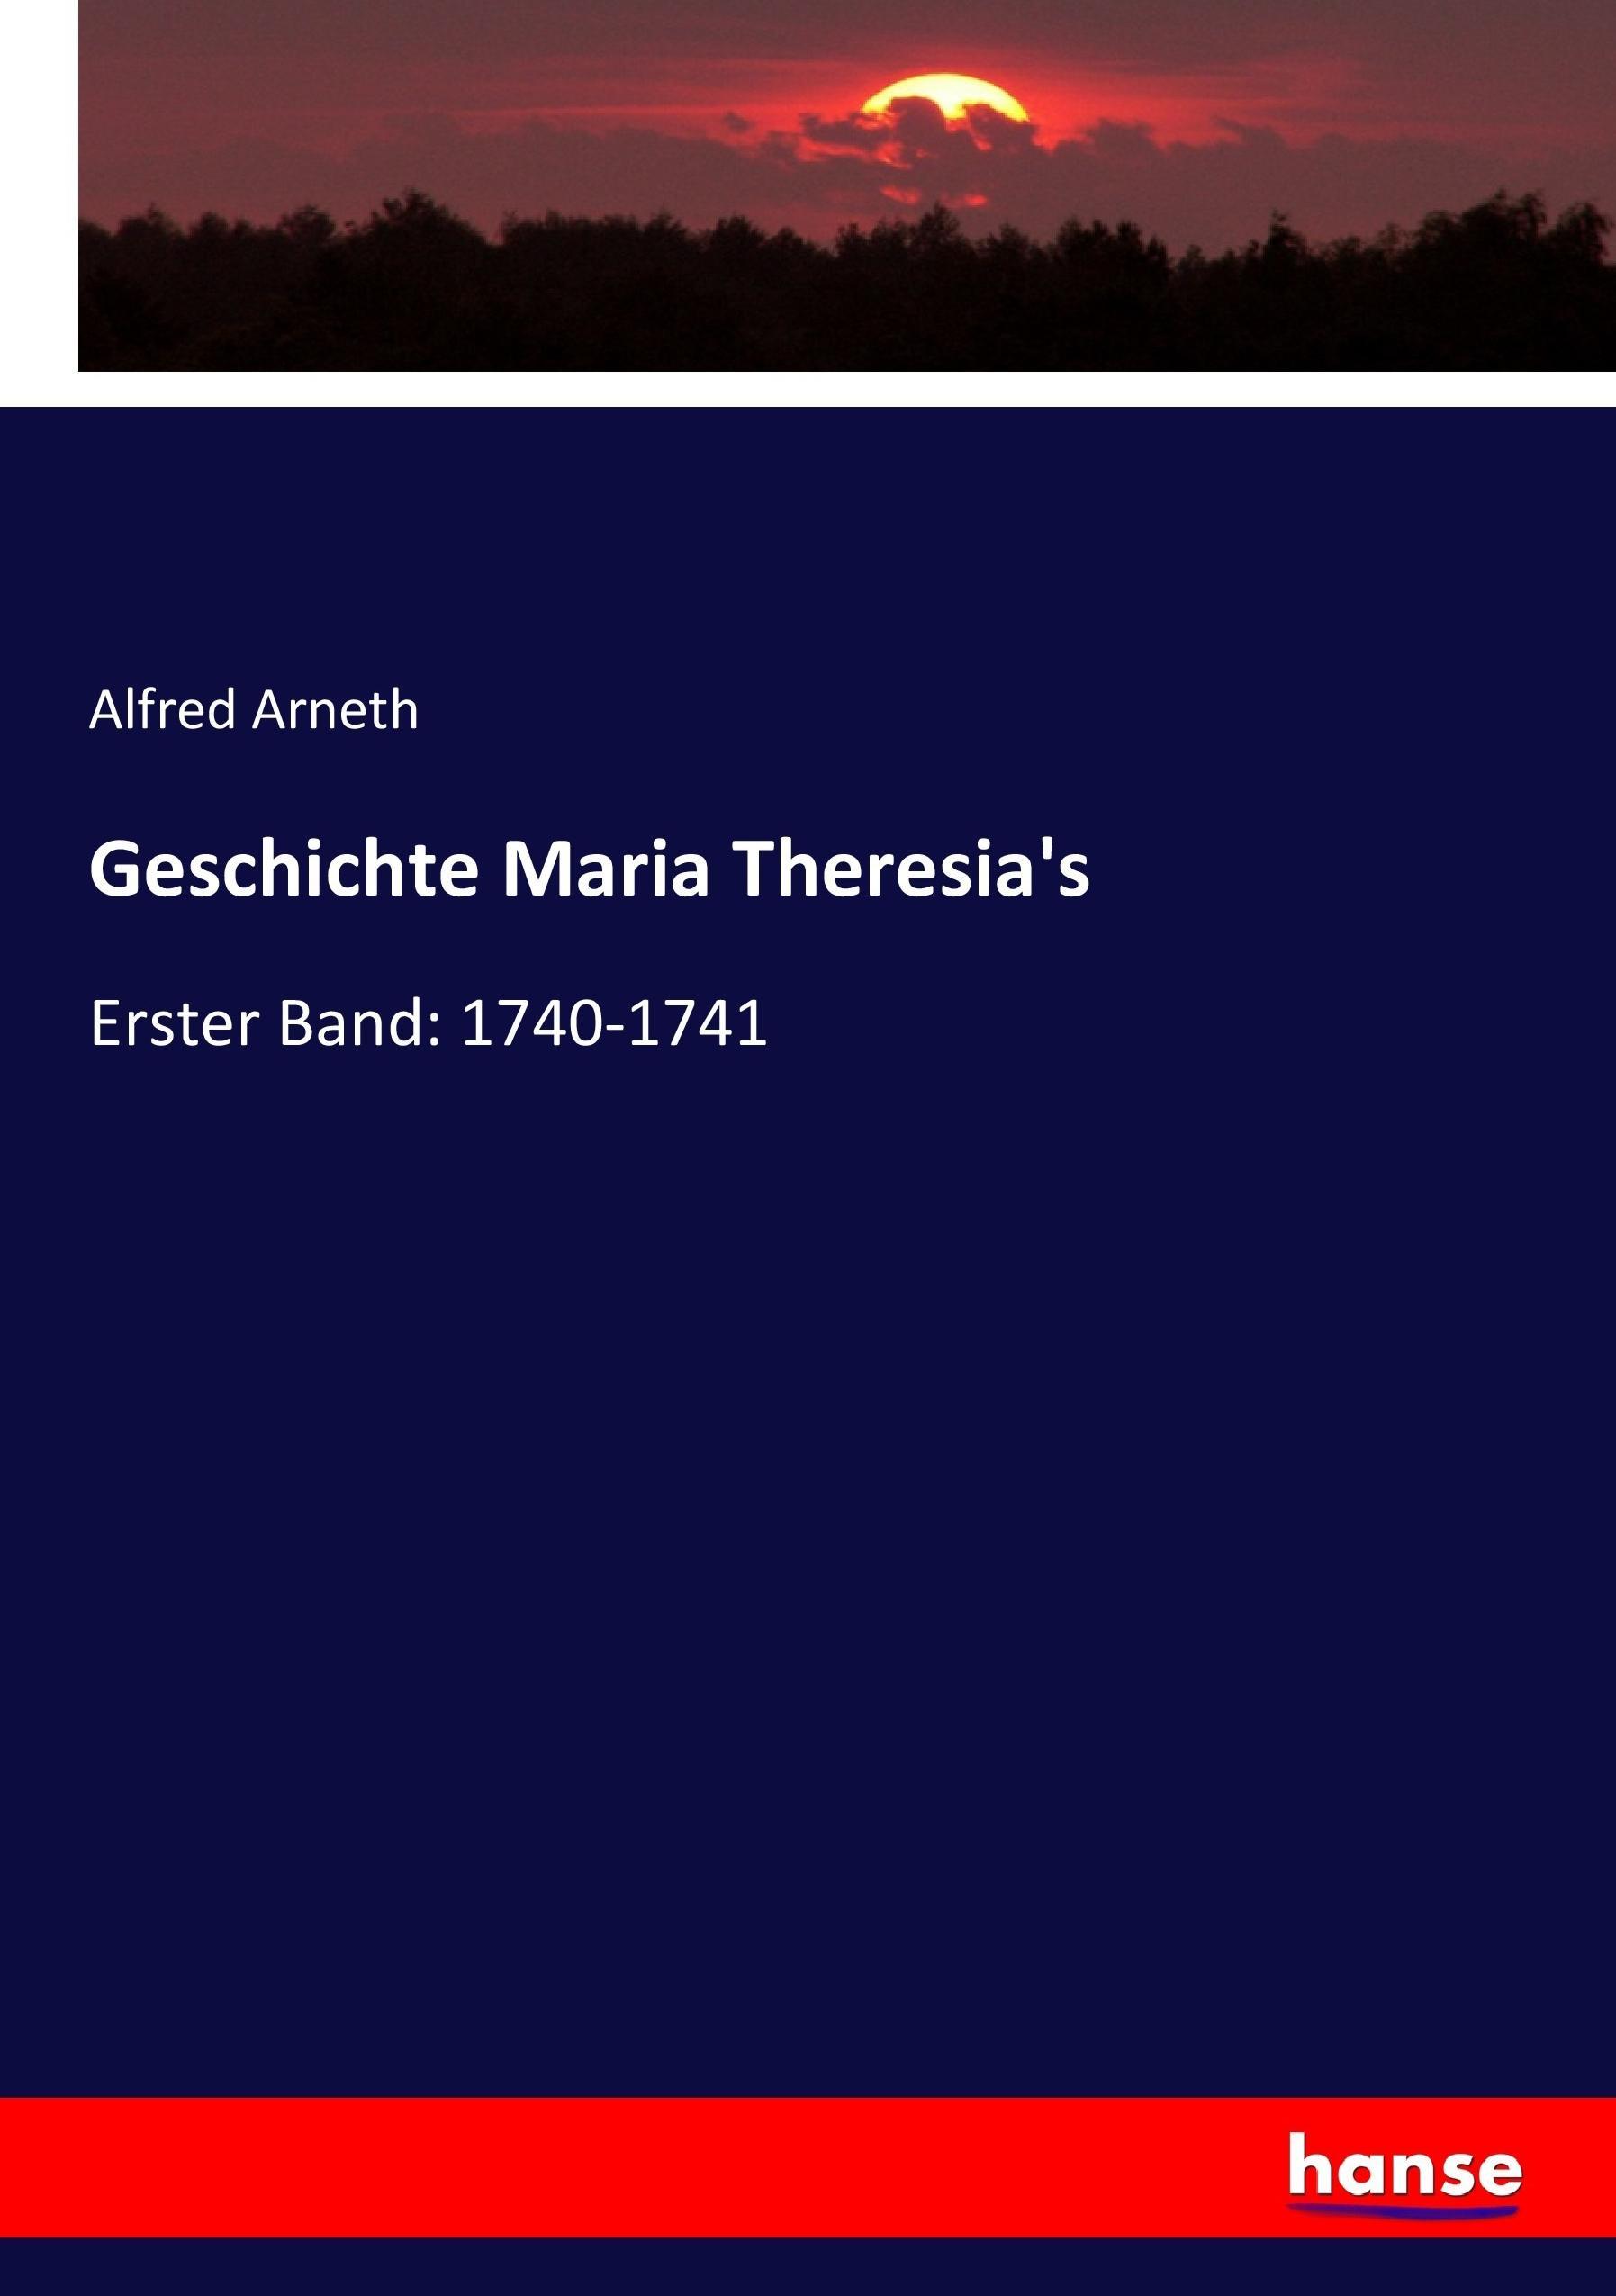 Geschichte Maria Theresia's | Erster Band: 1740-1741 | Alfred Arneth | Taschenbuch | Paperback | 440 S. | Deutsch | 2017 | hansebooks | EAN 9783743673281 - Arneth, Alfred